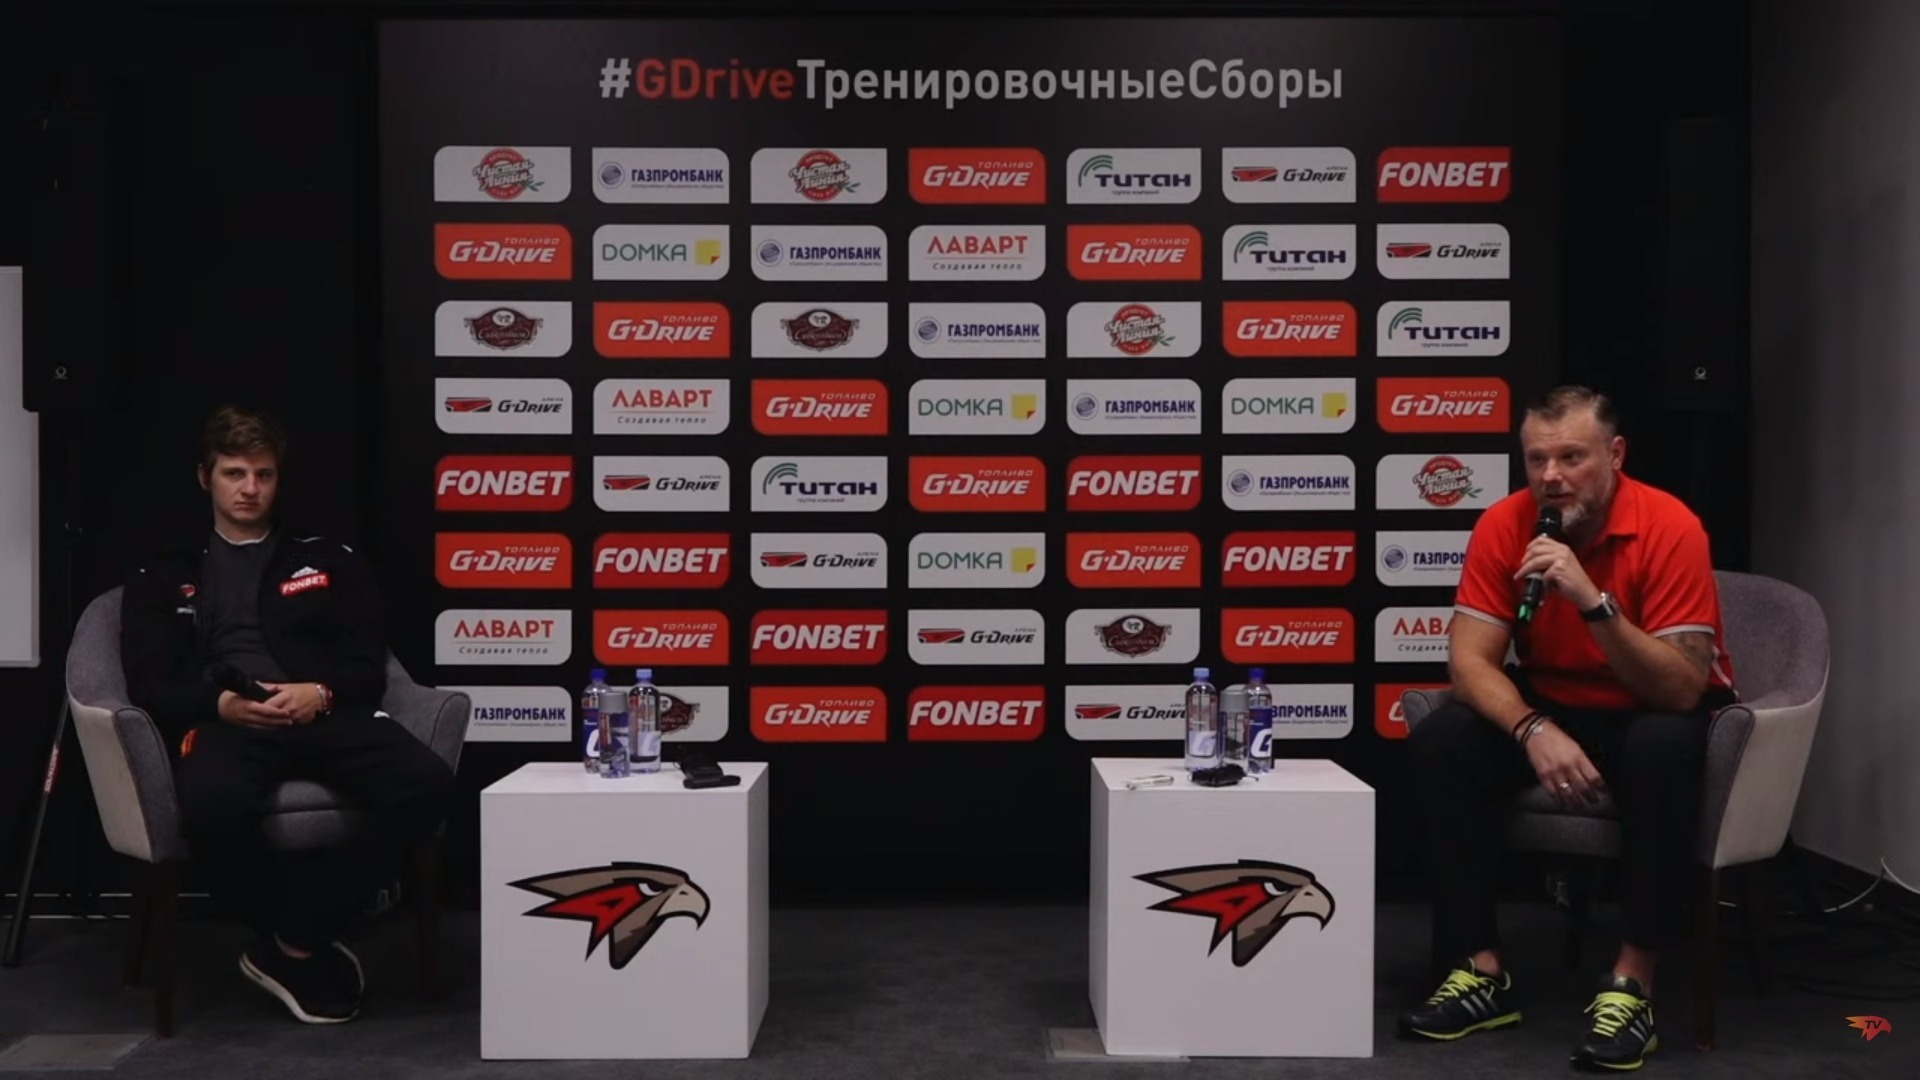 «Не хуже, чем в НХЛ»: Рябыкин и Ткачев оценили раздевалку на новой арене в Омске